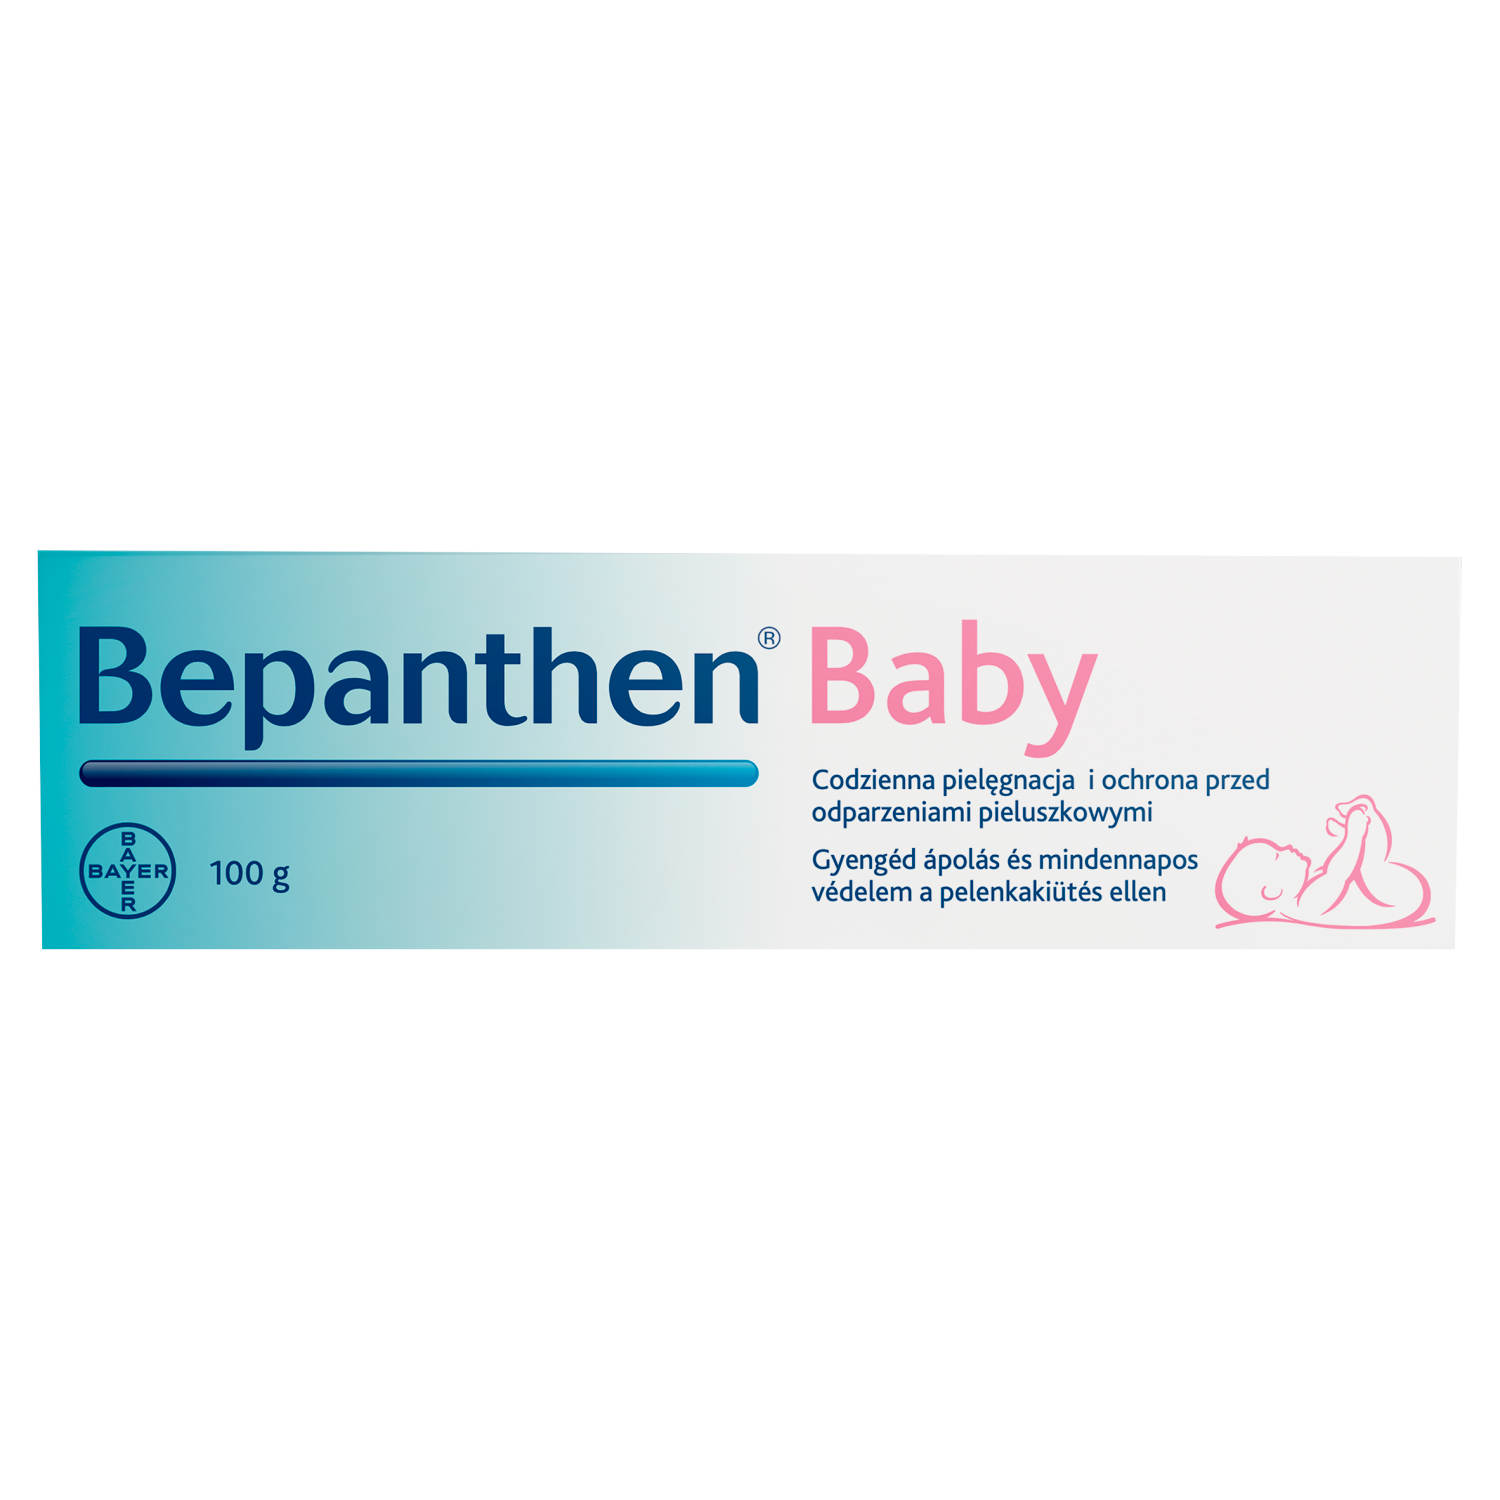 Bepanthen Baby мазь защитная для детей, 100 г